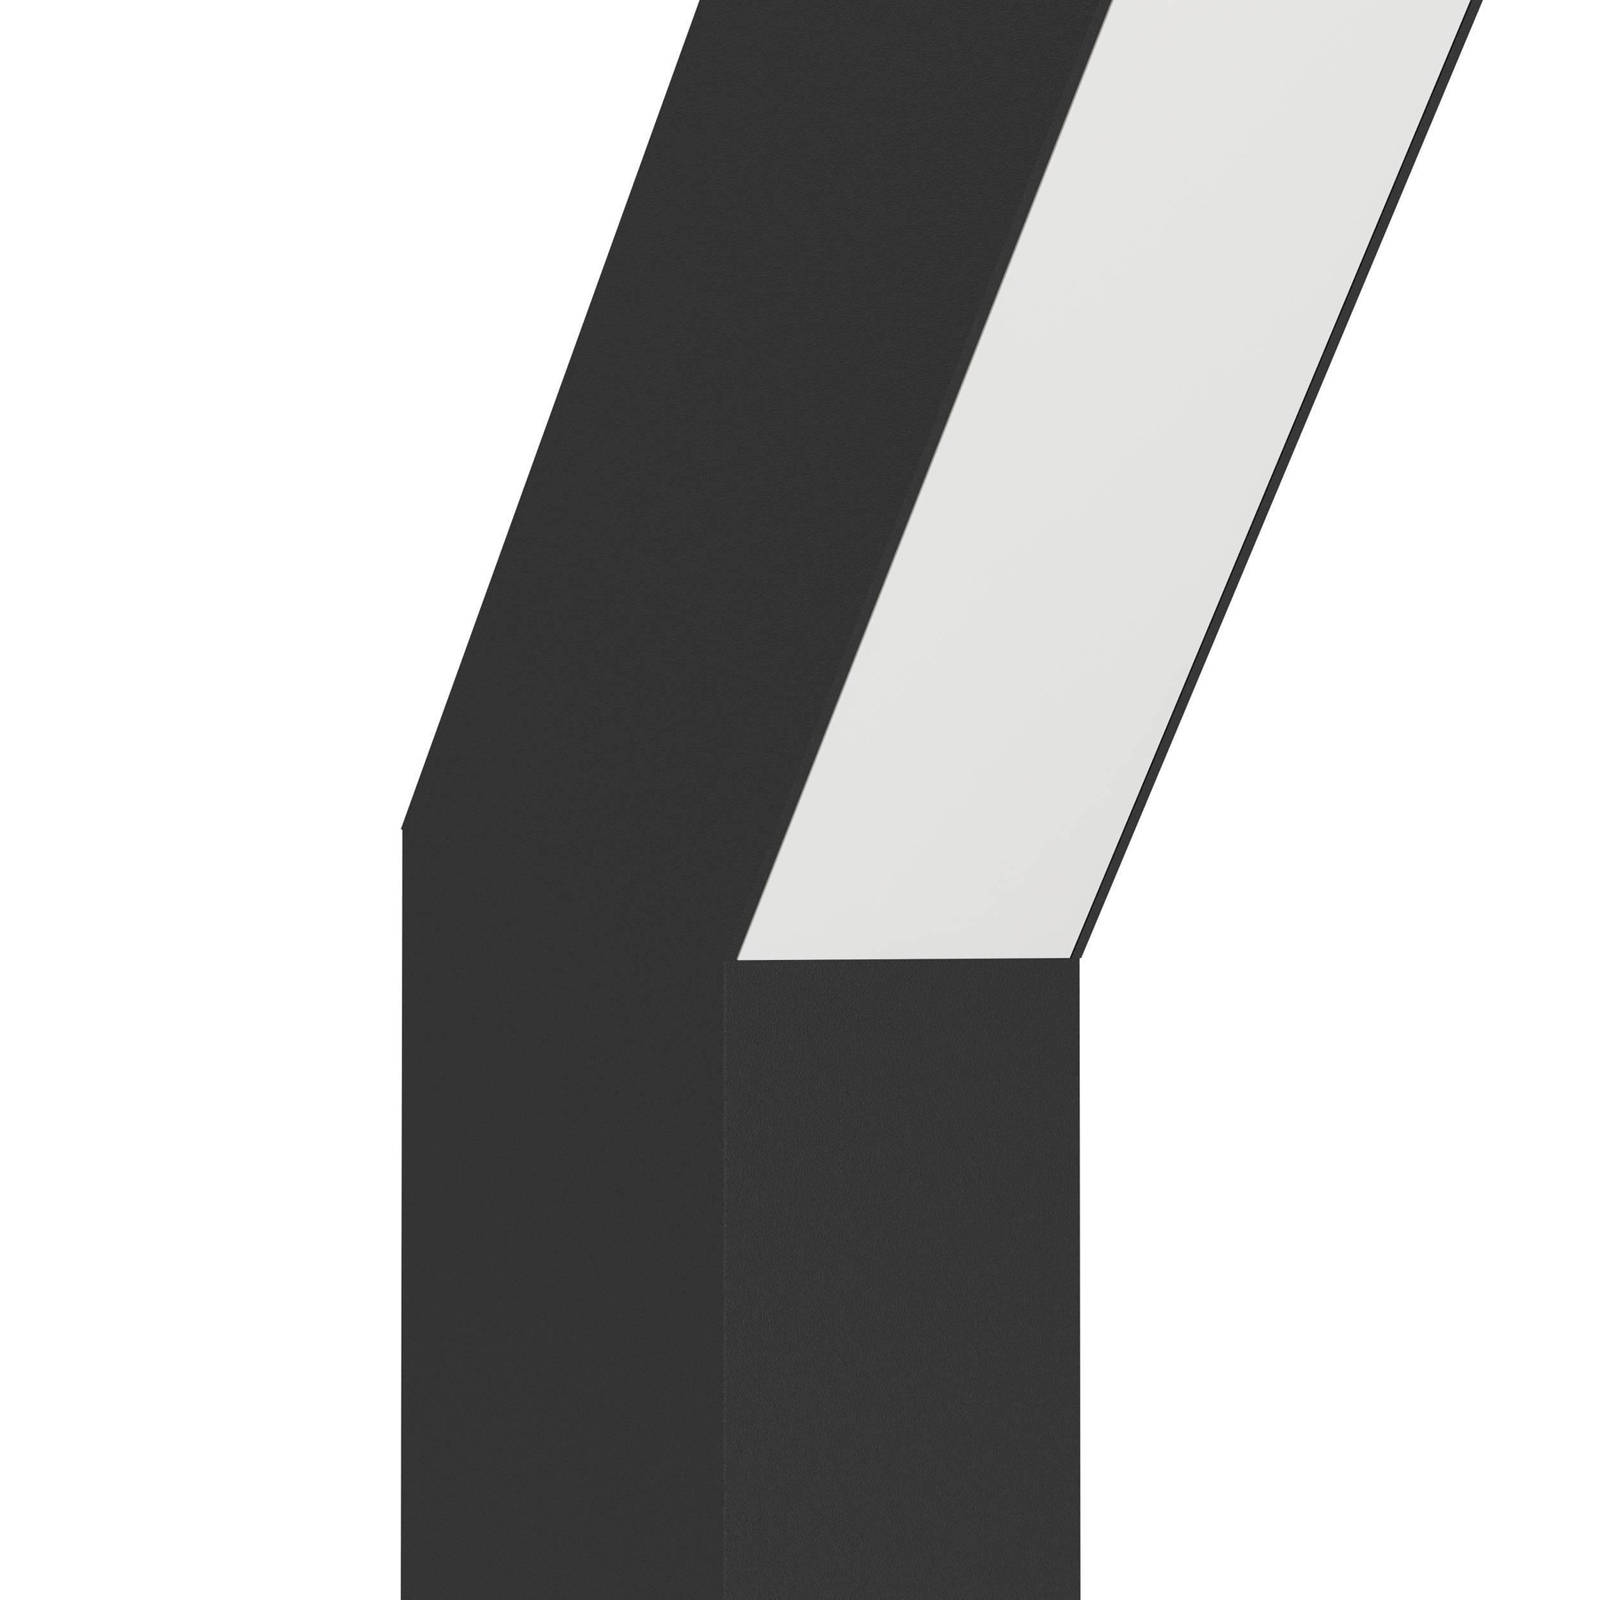 Ugento LED sokkellamp, zwart